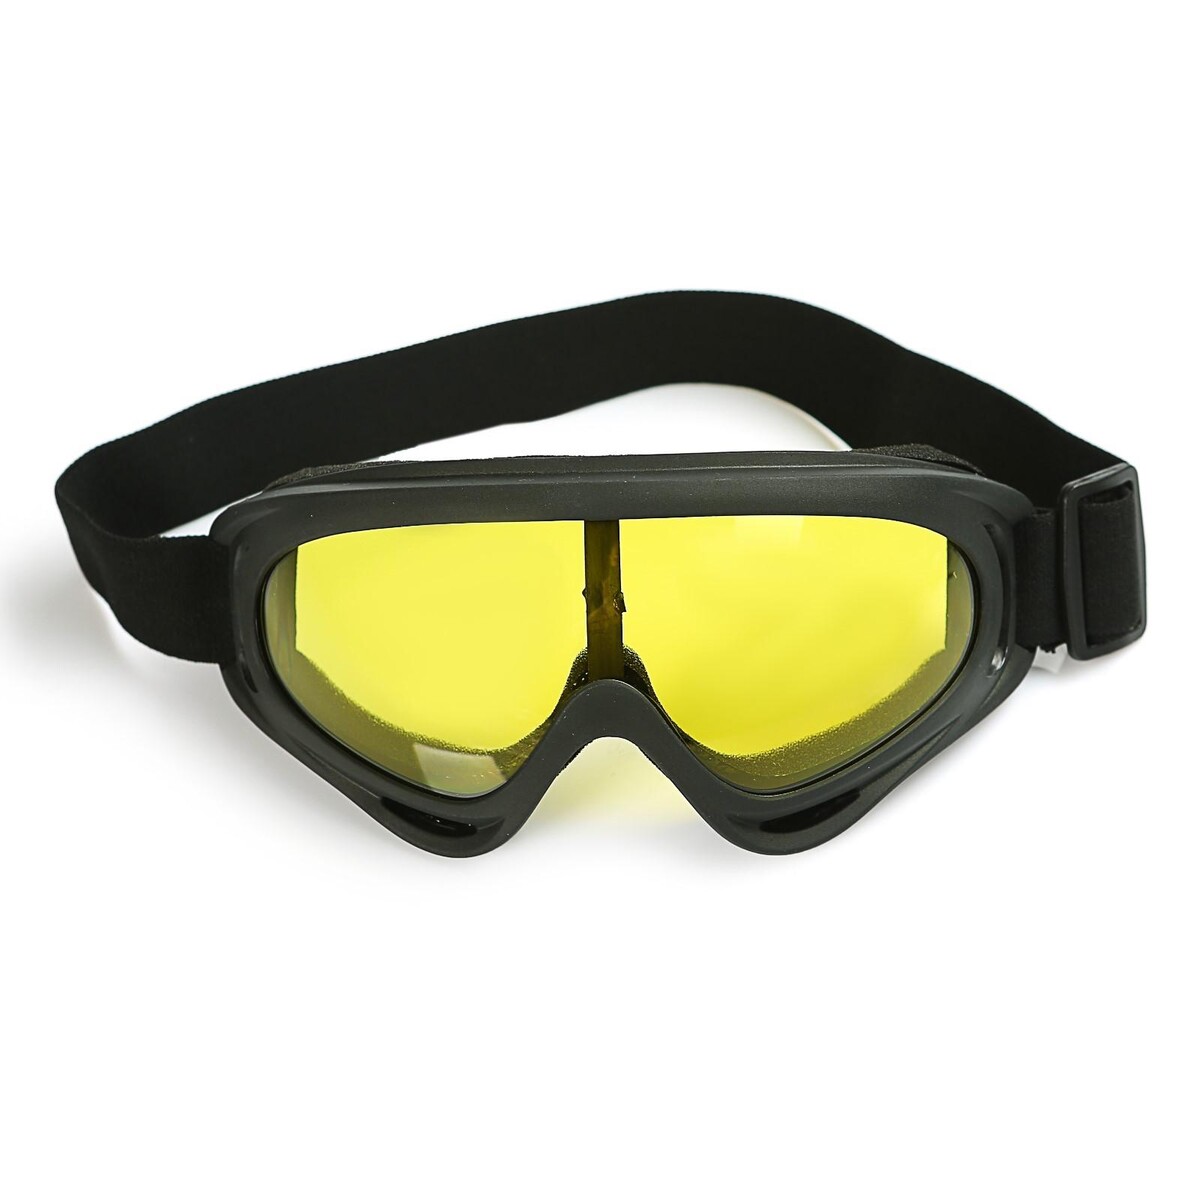 Очки для езды на мототехнике, стекло желтое, цвет черный очки маска для езды на мототехнике разборные стекло желтое